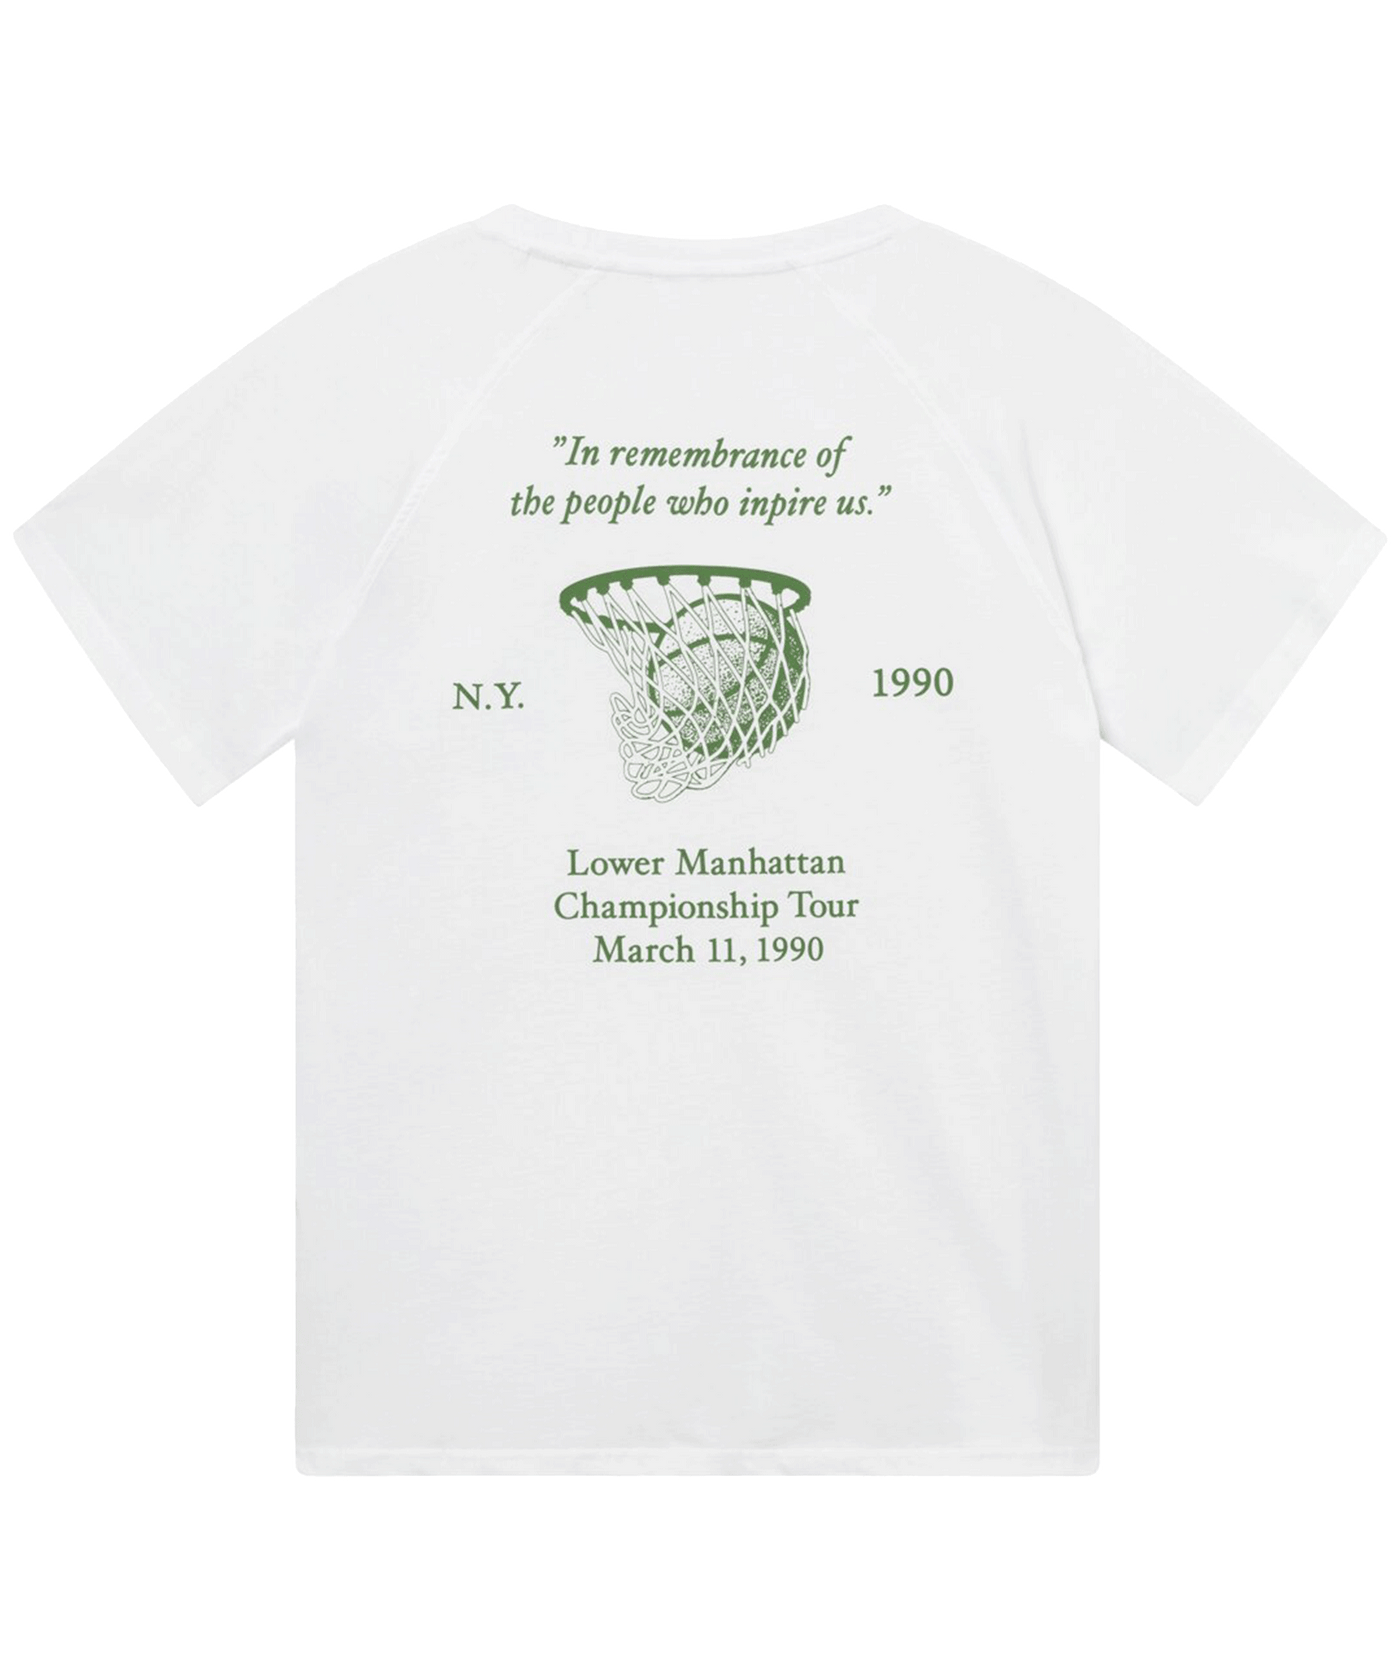 Les Deux - Ldm101182 - Tournament T-shirt - White/green